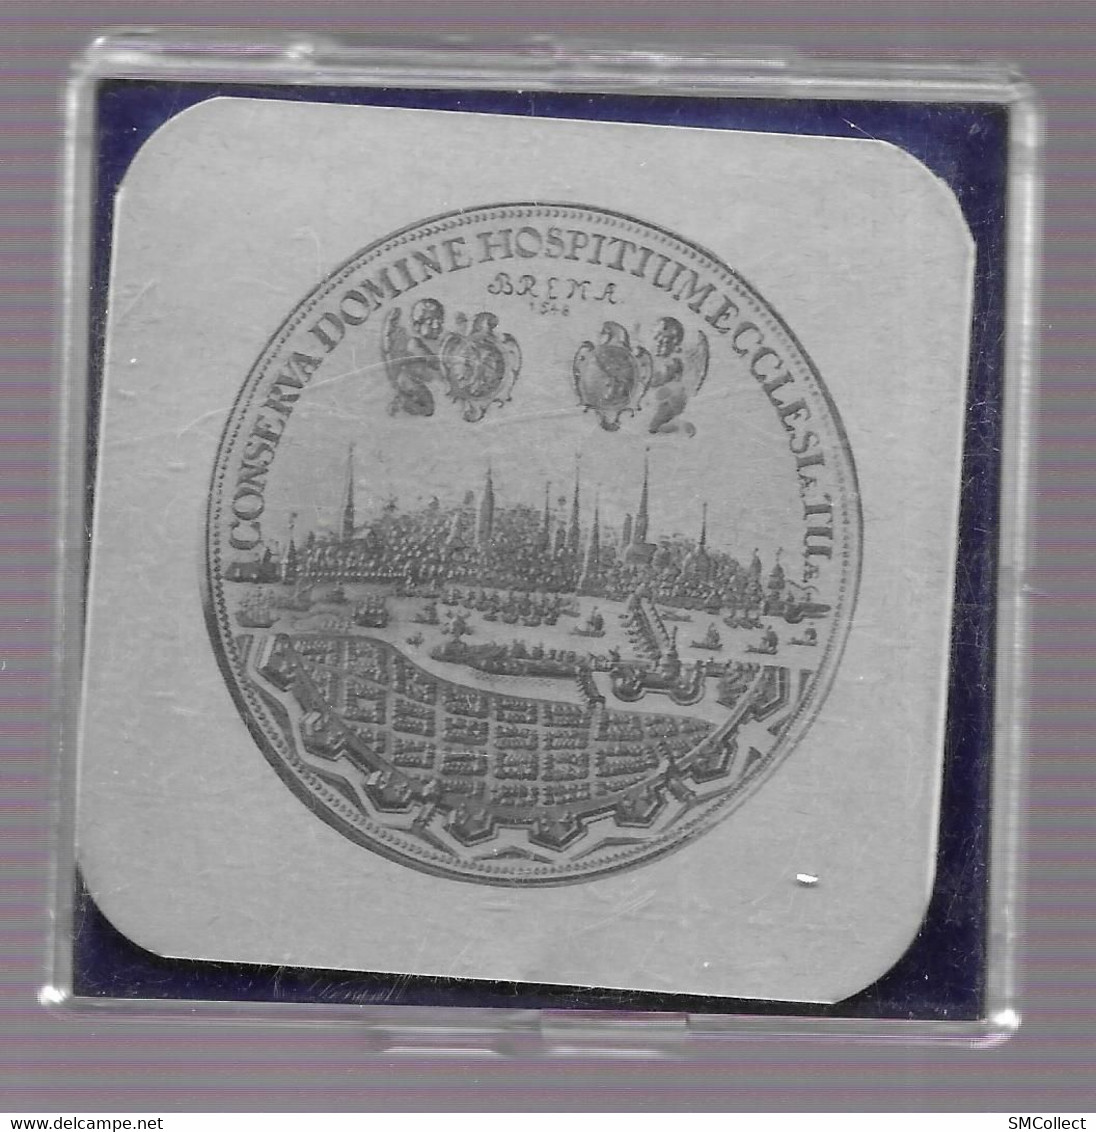 Bremer Schaugulden 1648 proof. Réplique en argent 835/1000e, 14.3 grammes, dans son écrin, avec notice explicative